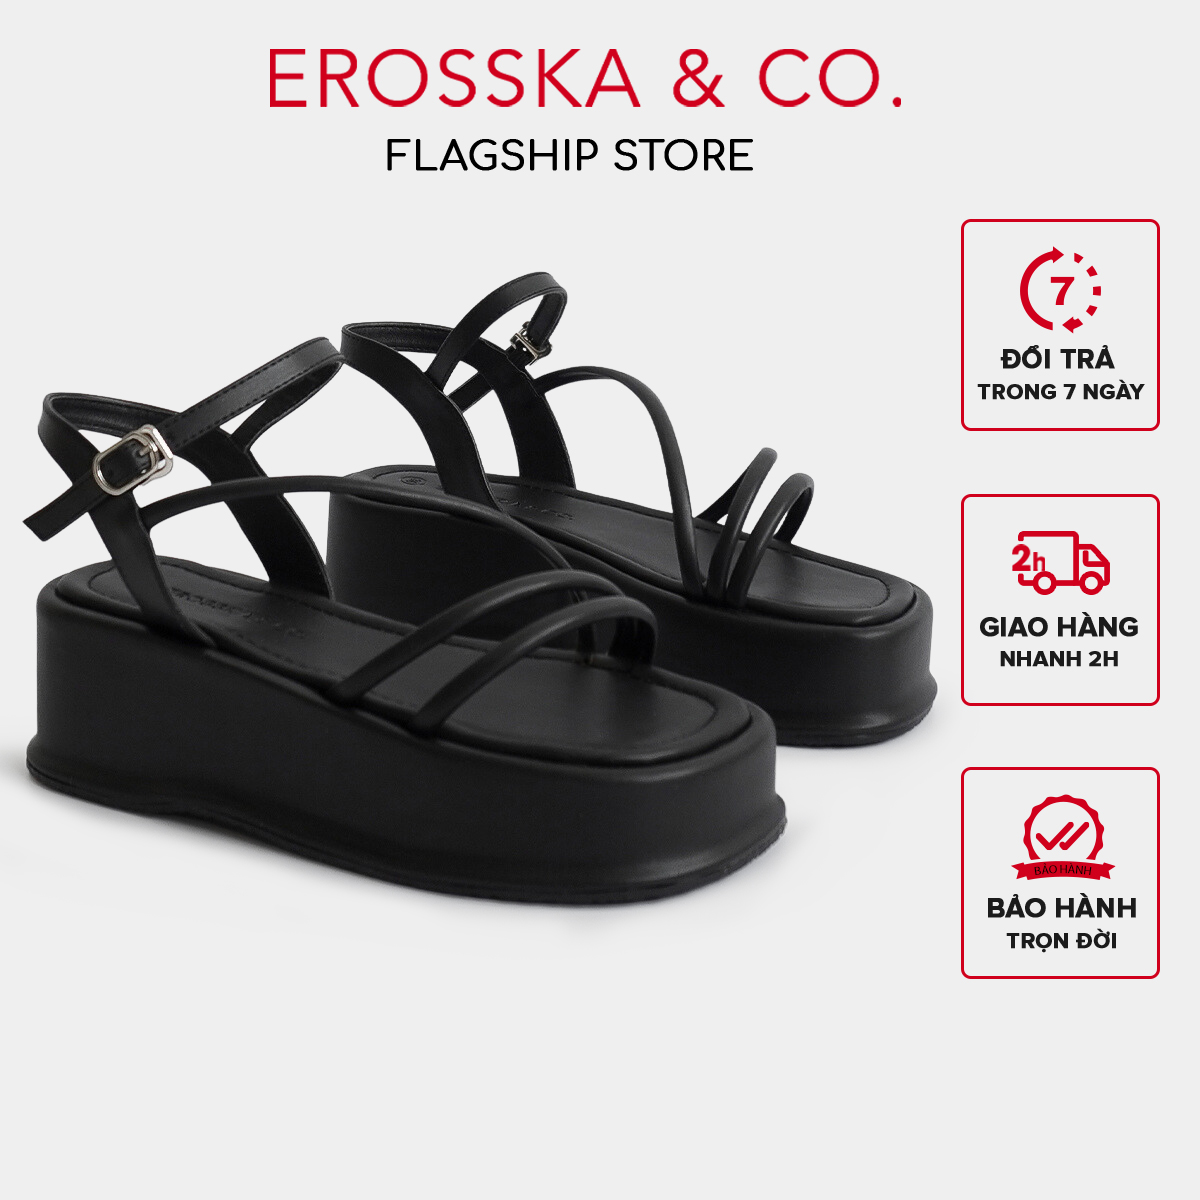 Erosska - Giày sandal nữ đế xuồng phối dây quai mảnh kiểu dáng basic cao 6cm màu đen - SB015